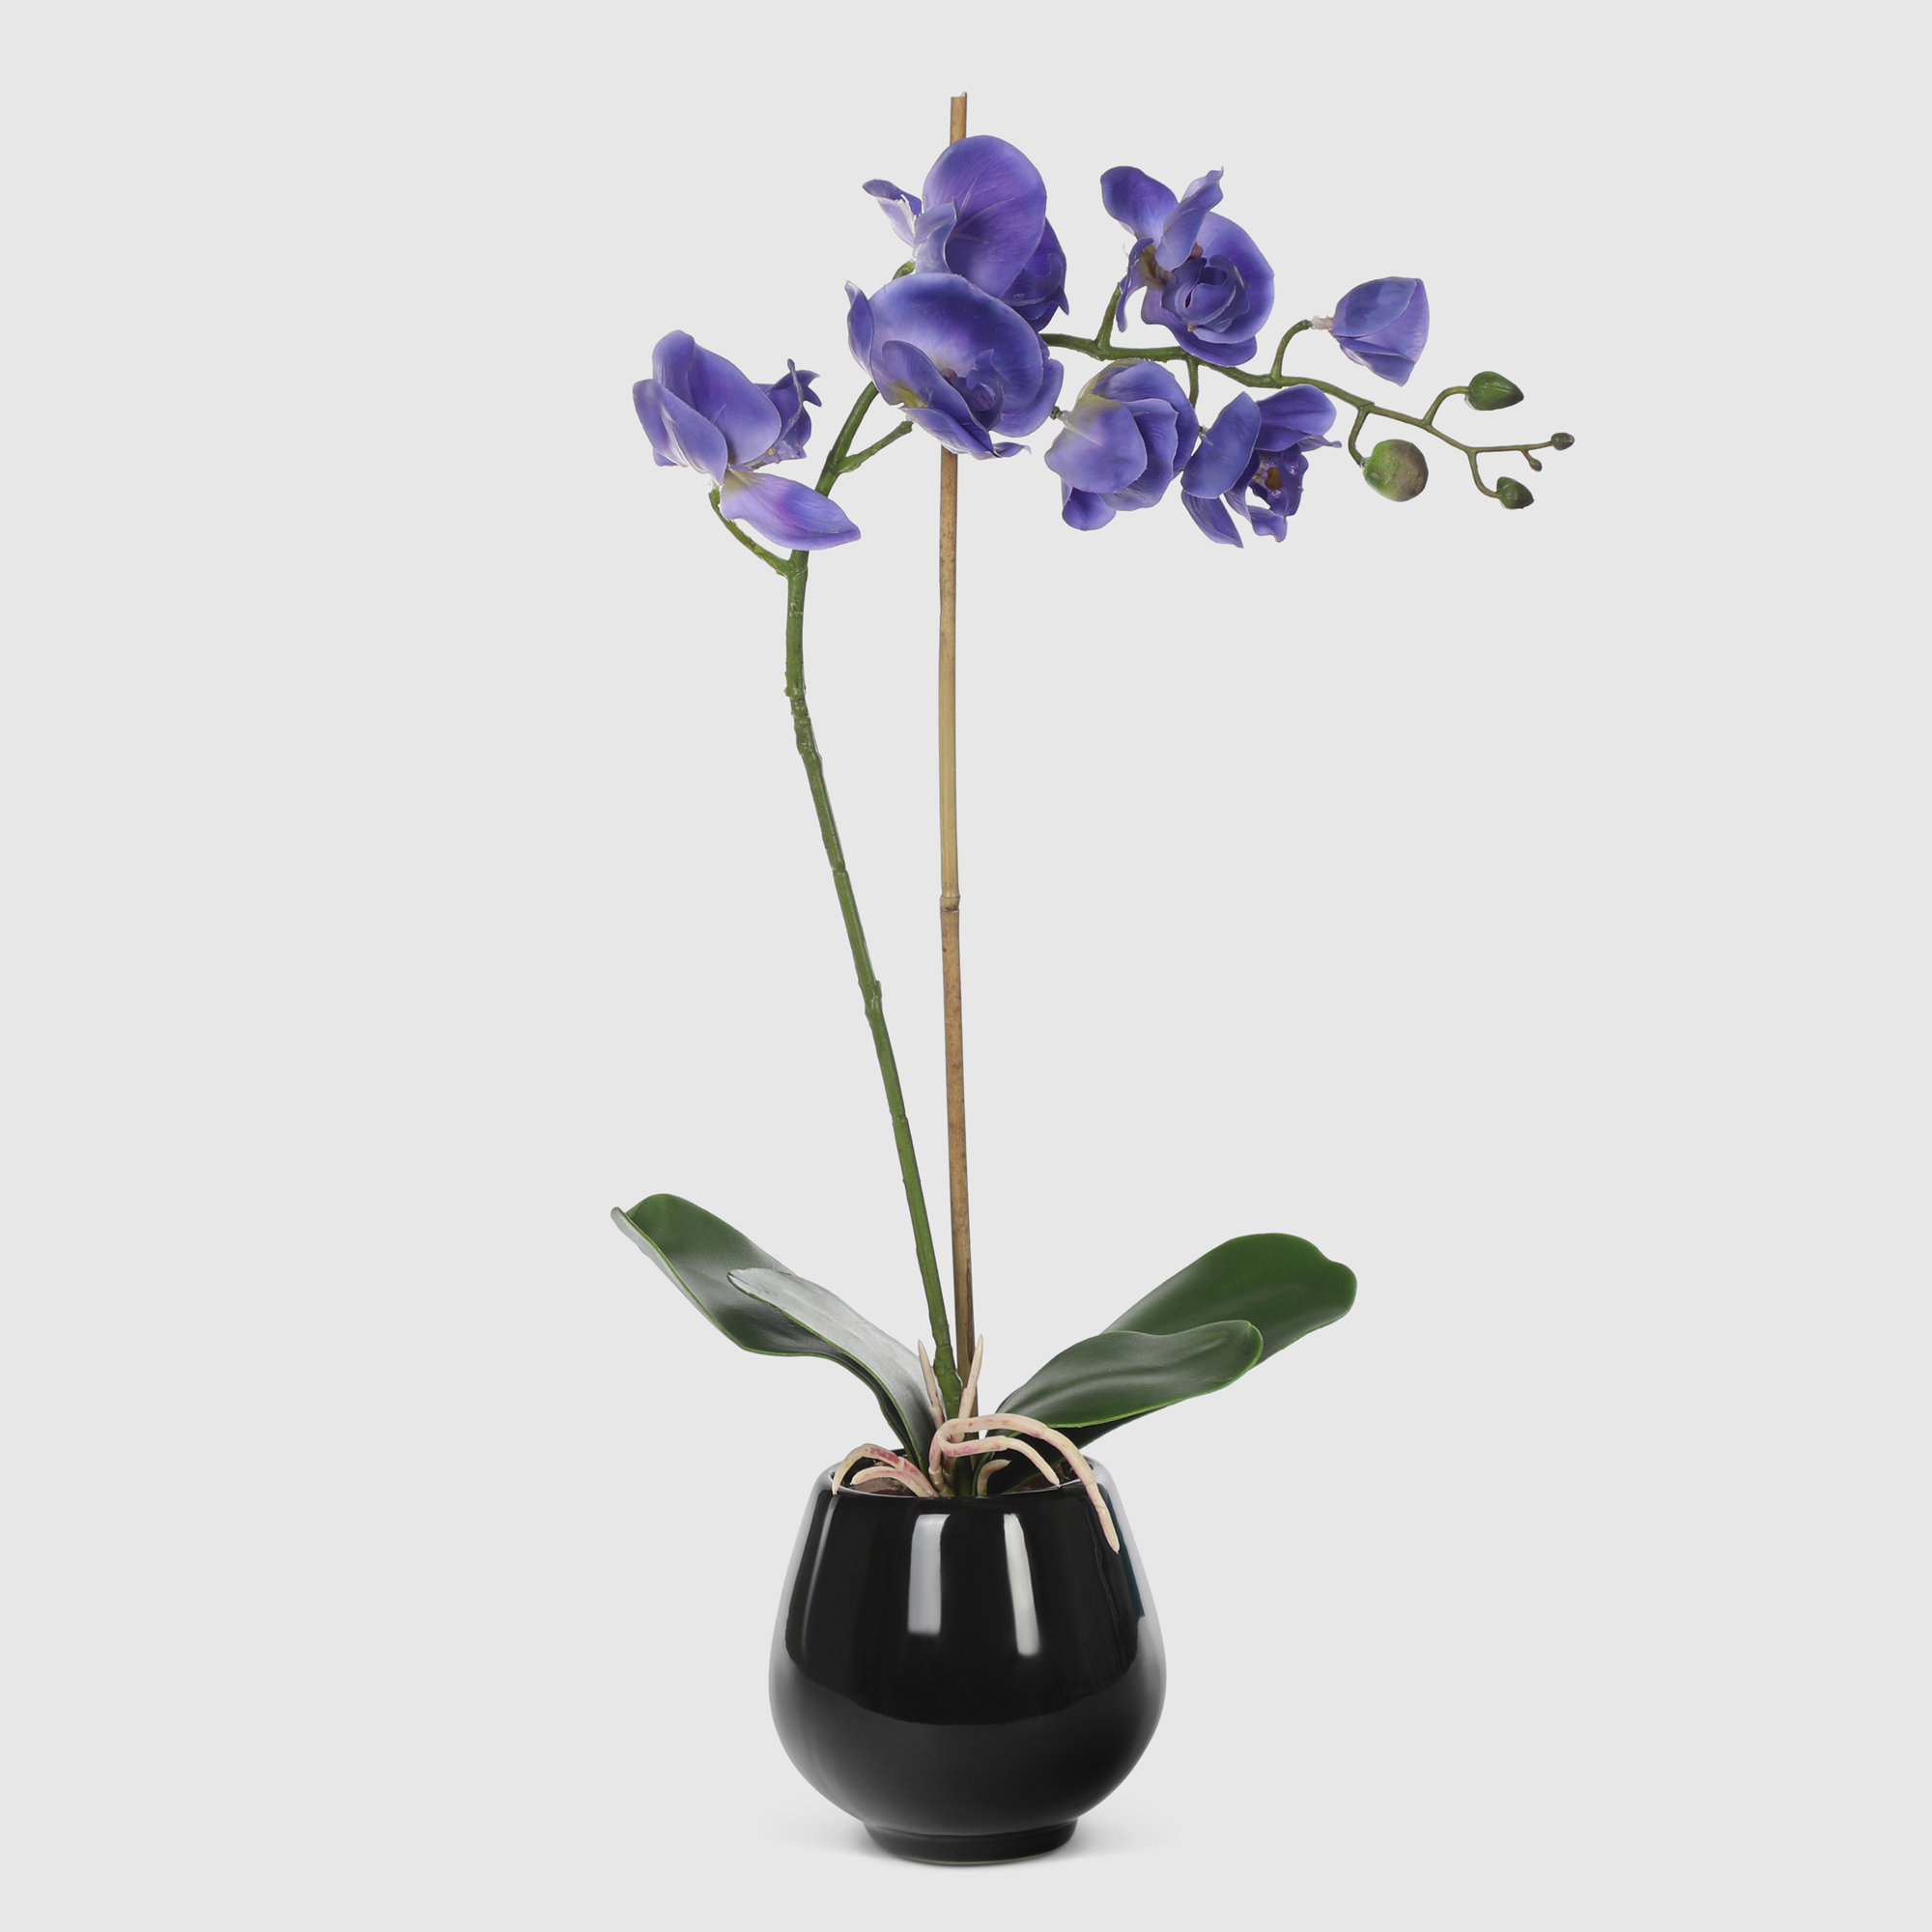 Орхидея в черном кашпо Конэко-О 567_10164185 50 см цветок искусственный конэко о орхидея в декоративном кашпо 57 см